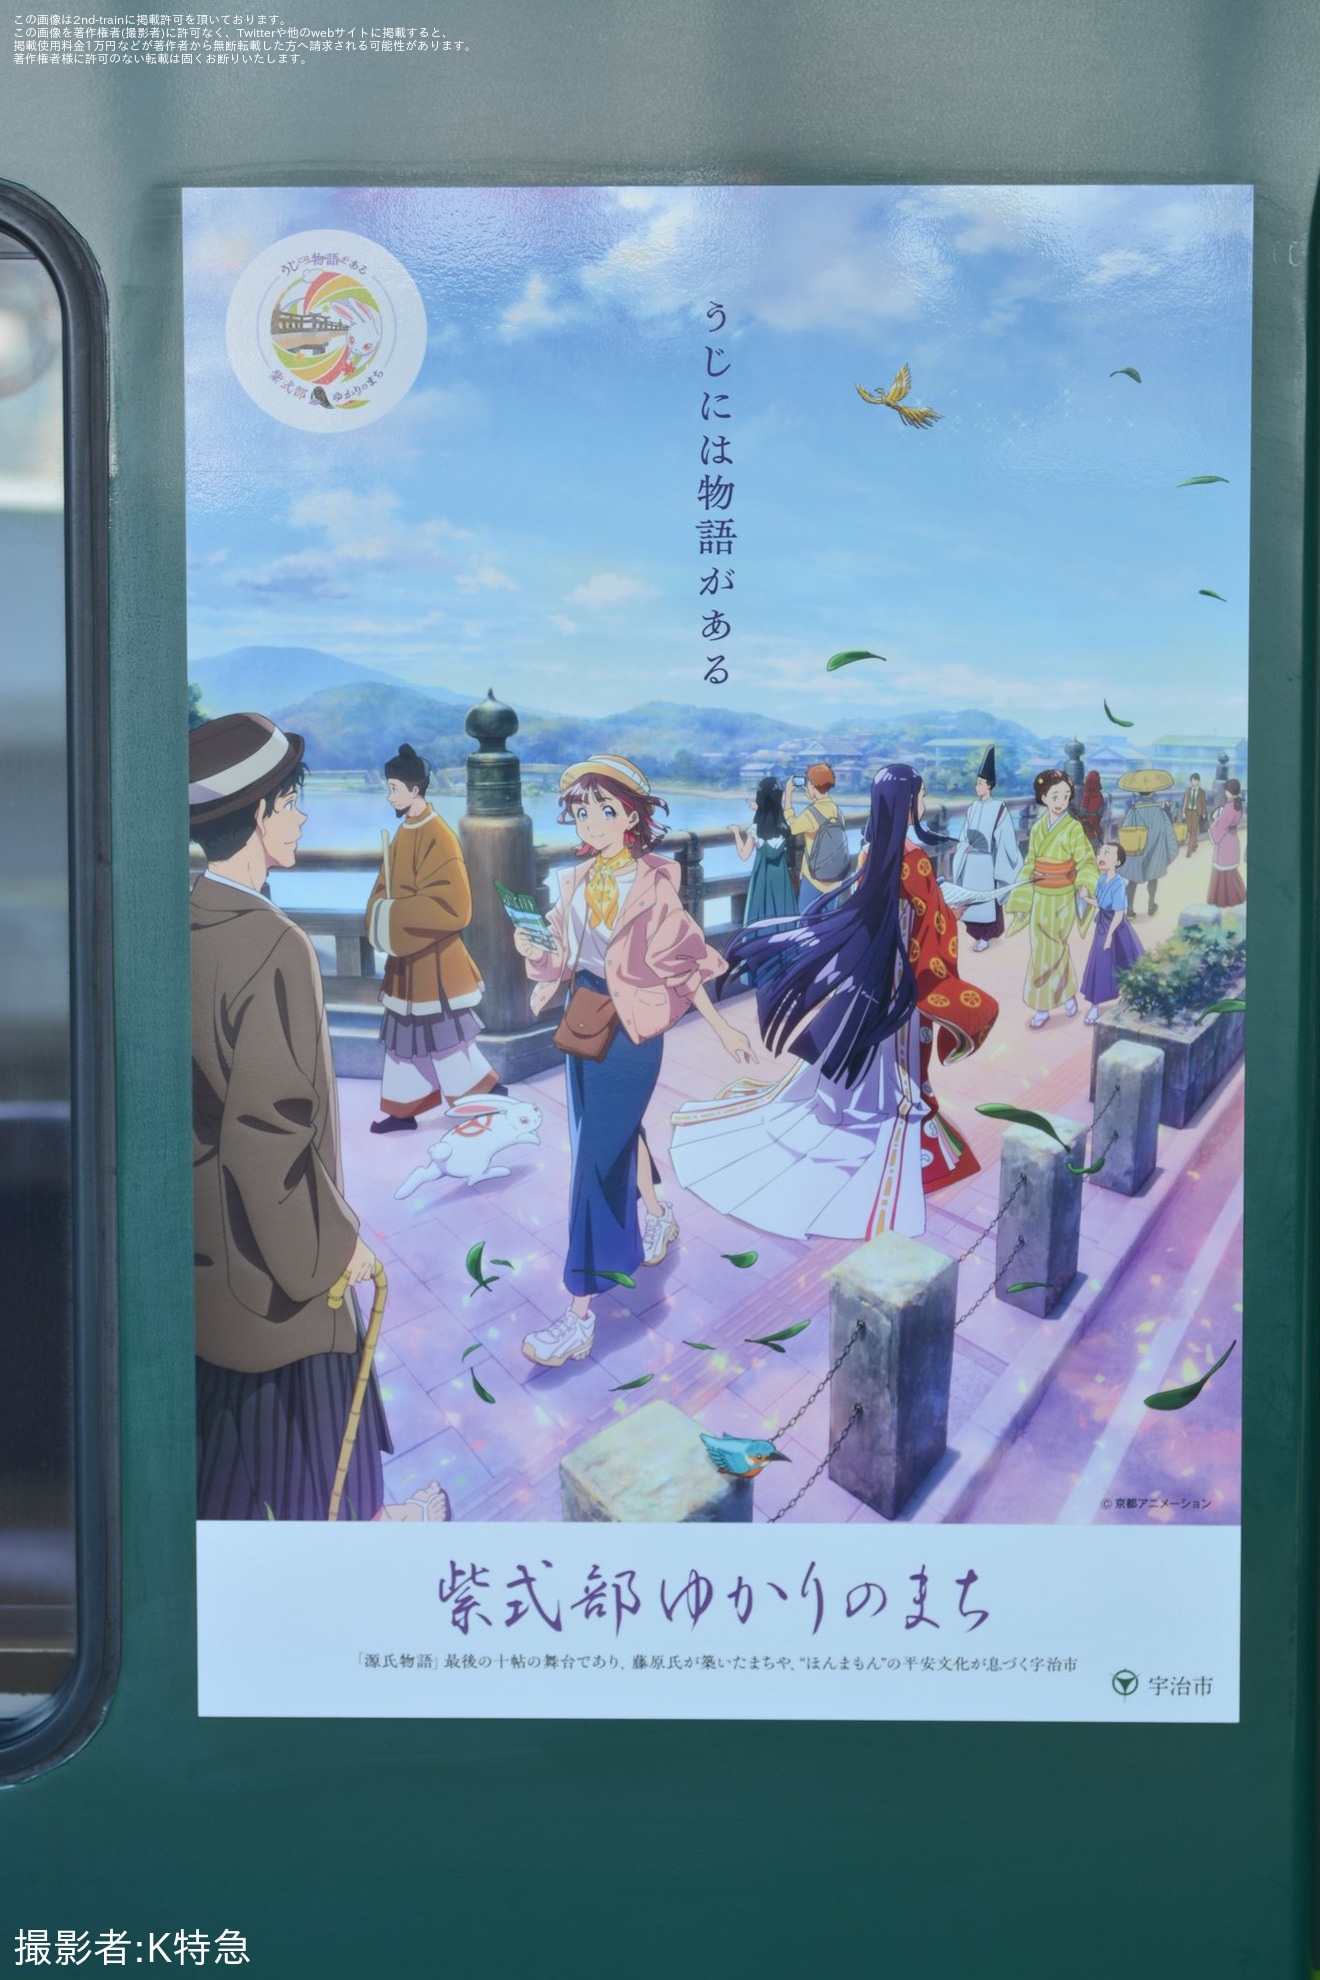 【京阪】13000系13027Fへ「うじには物語がある～紫式部ゆかりのまち」の副標と戸袋部にステッカーの拡大写真